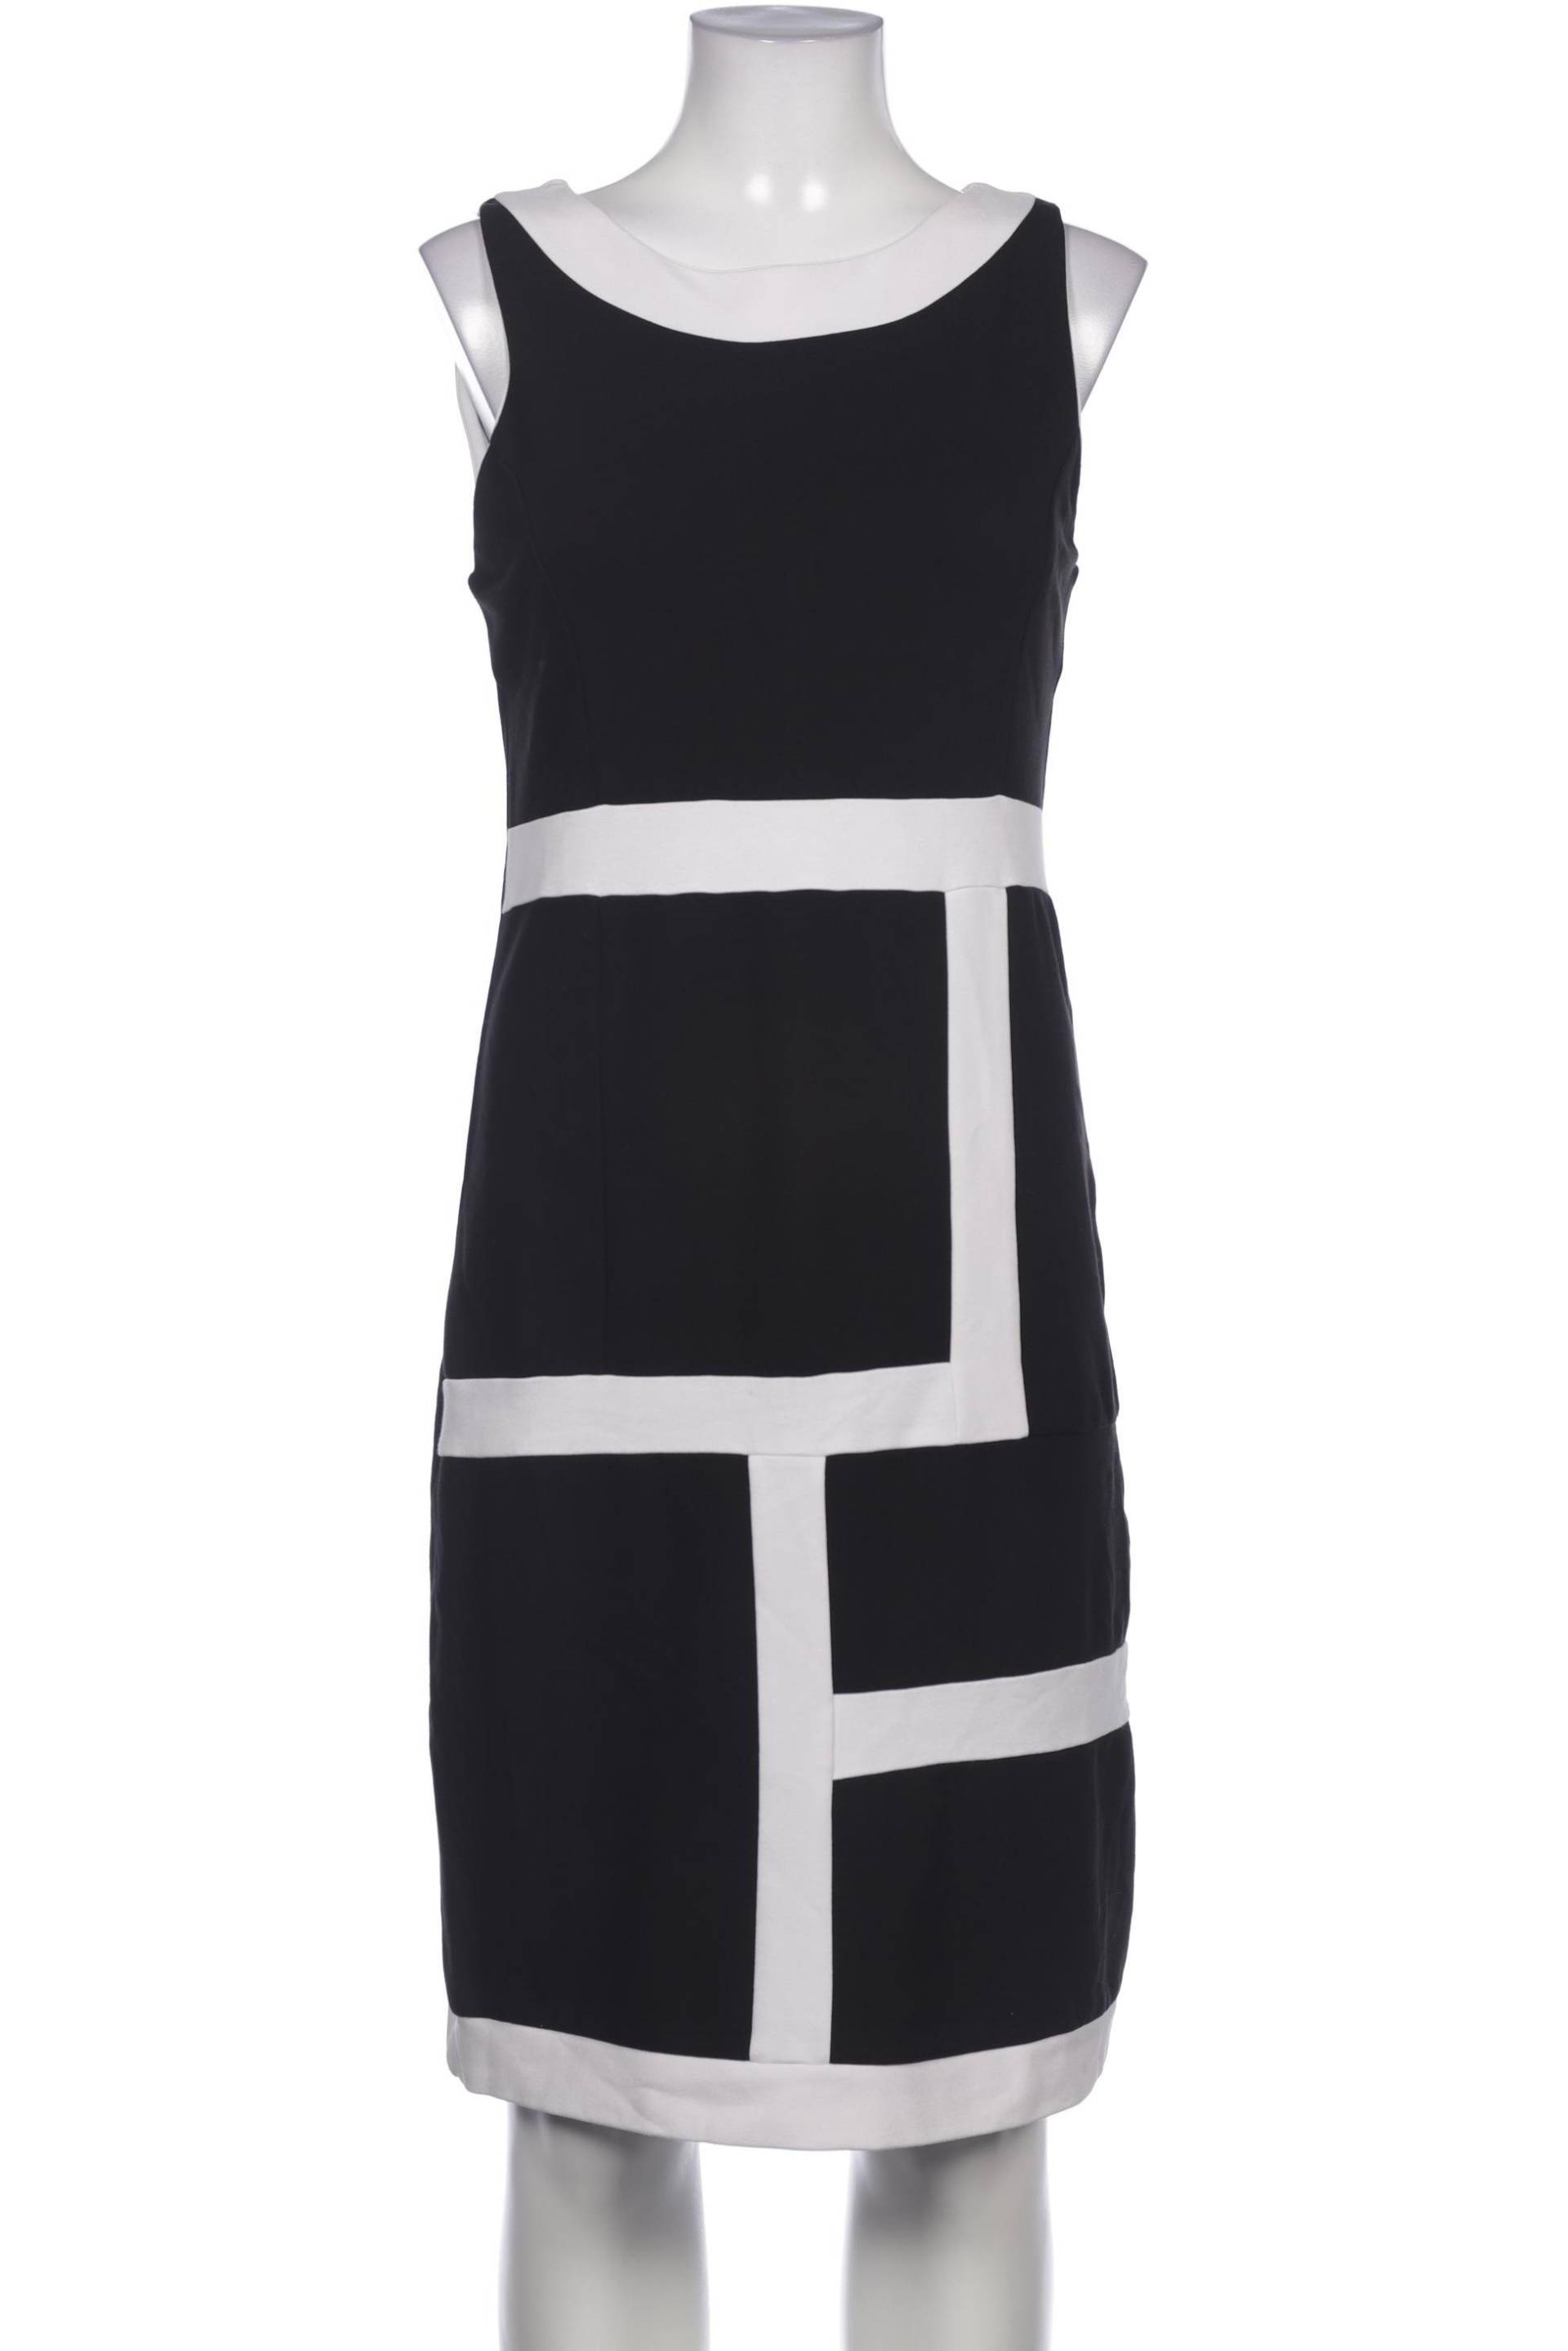 Montego Damen Kleid, schwarz, Gr. 36 von montego